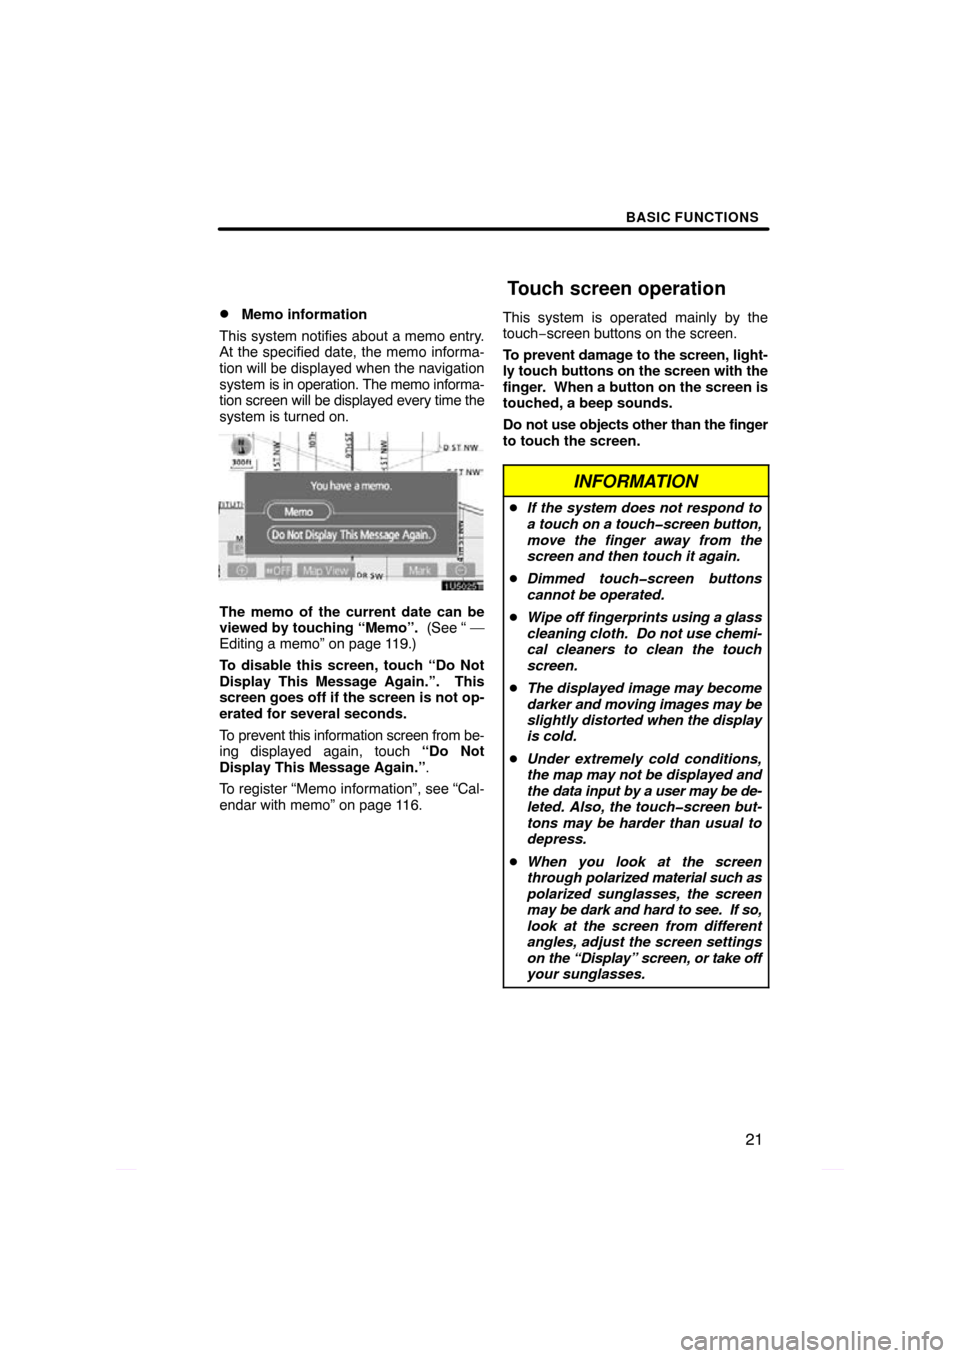 TOYOTA PRIUS 2009 2.G Navigation Manual BASIC FUNCTIONS
21

Memo information
This system notifies about a memo entry.
At the specified date, the memo informa-
tion will be displayed when the navigation
system is in operation. The memo info